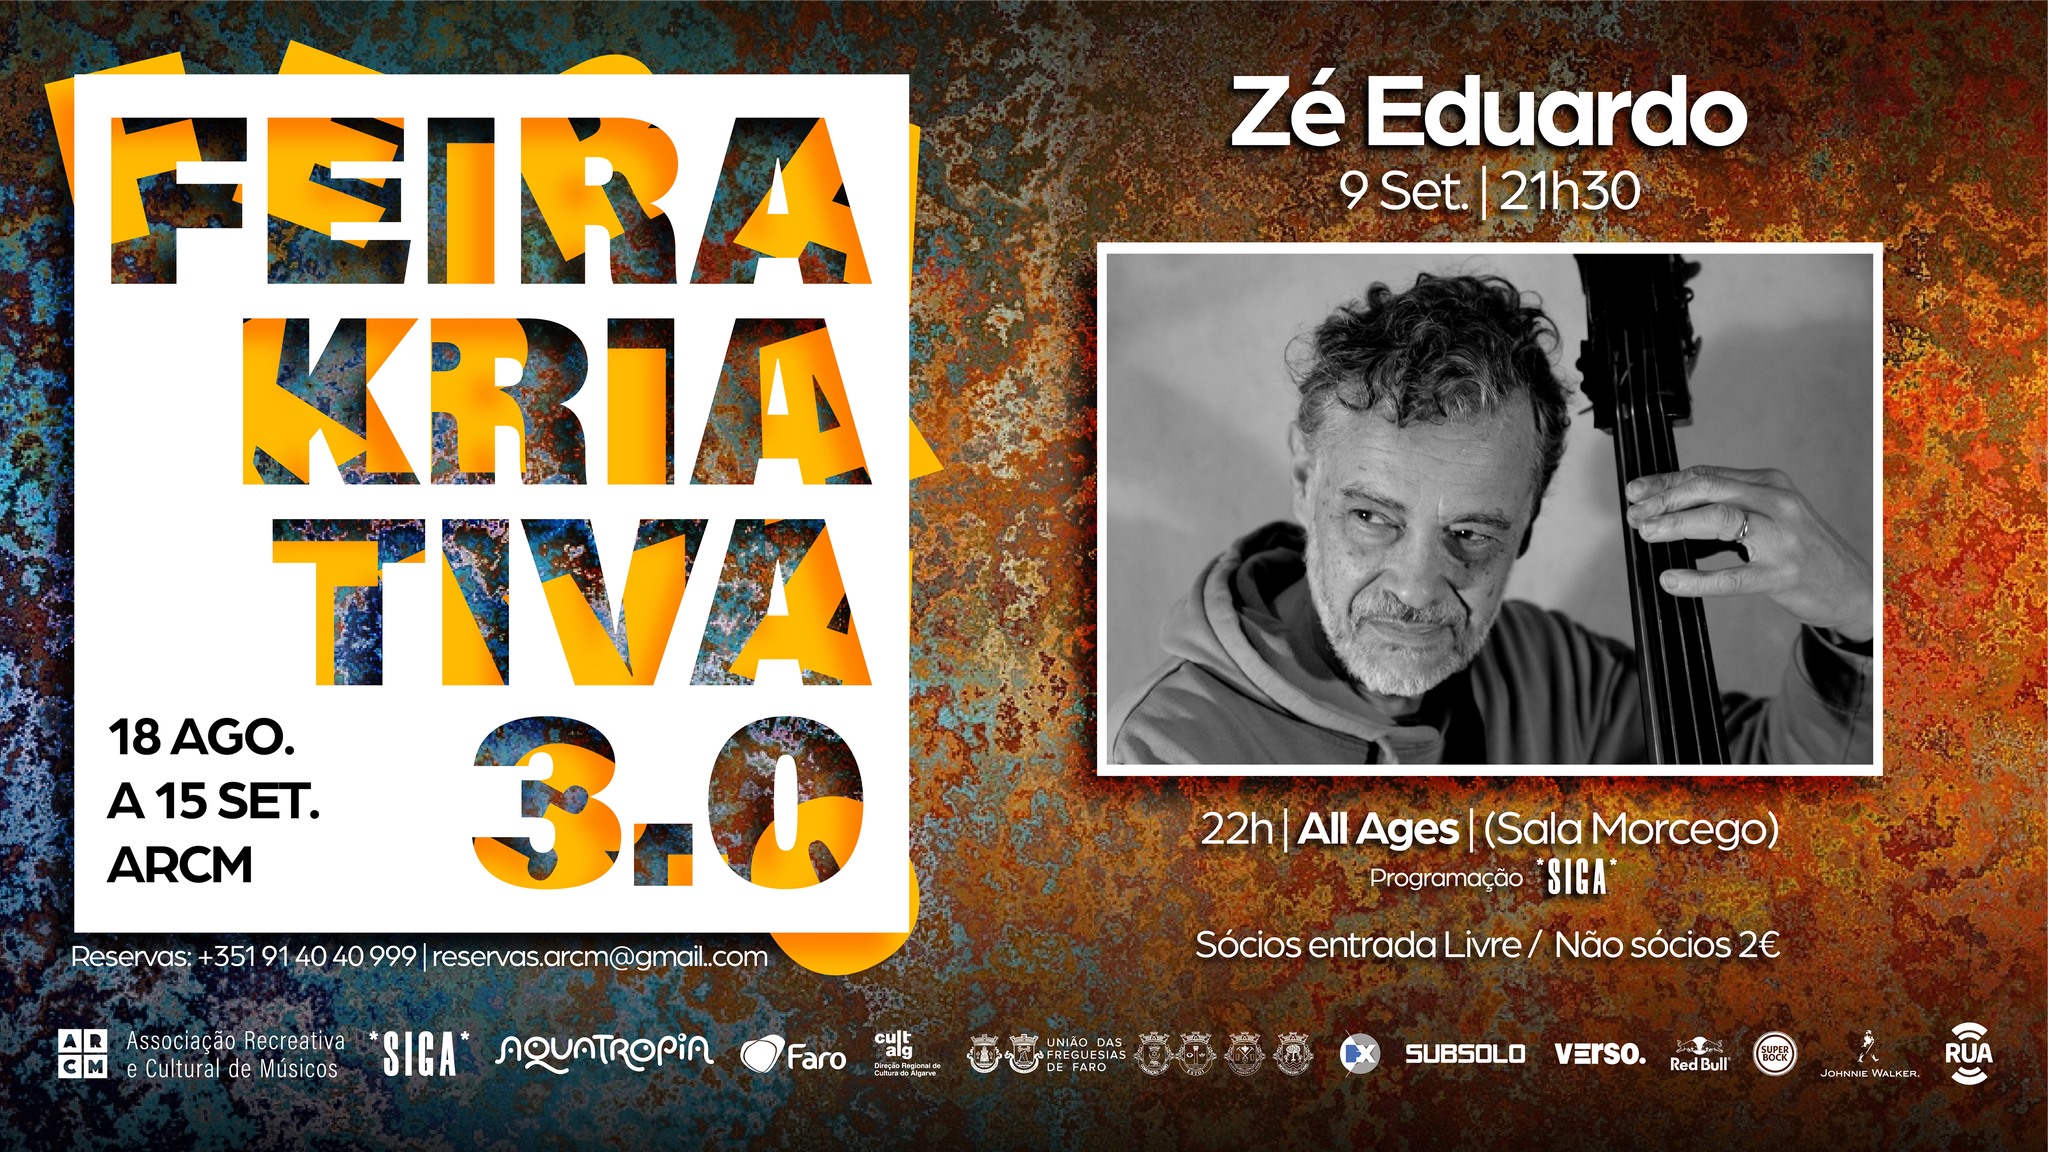 Feira Kriativa 3.0 | Zé Eduardo | DJ Renato Aka Renato